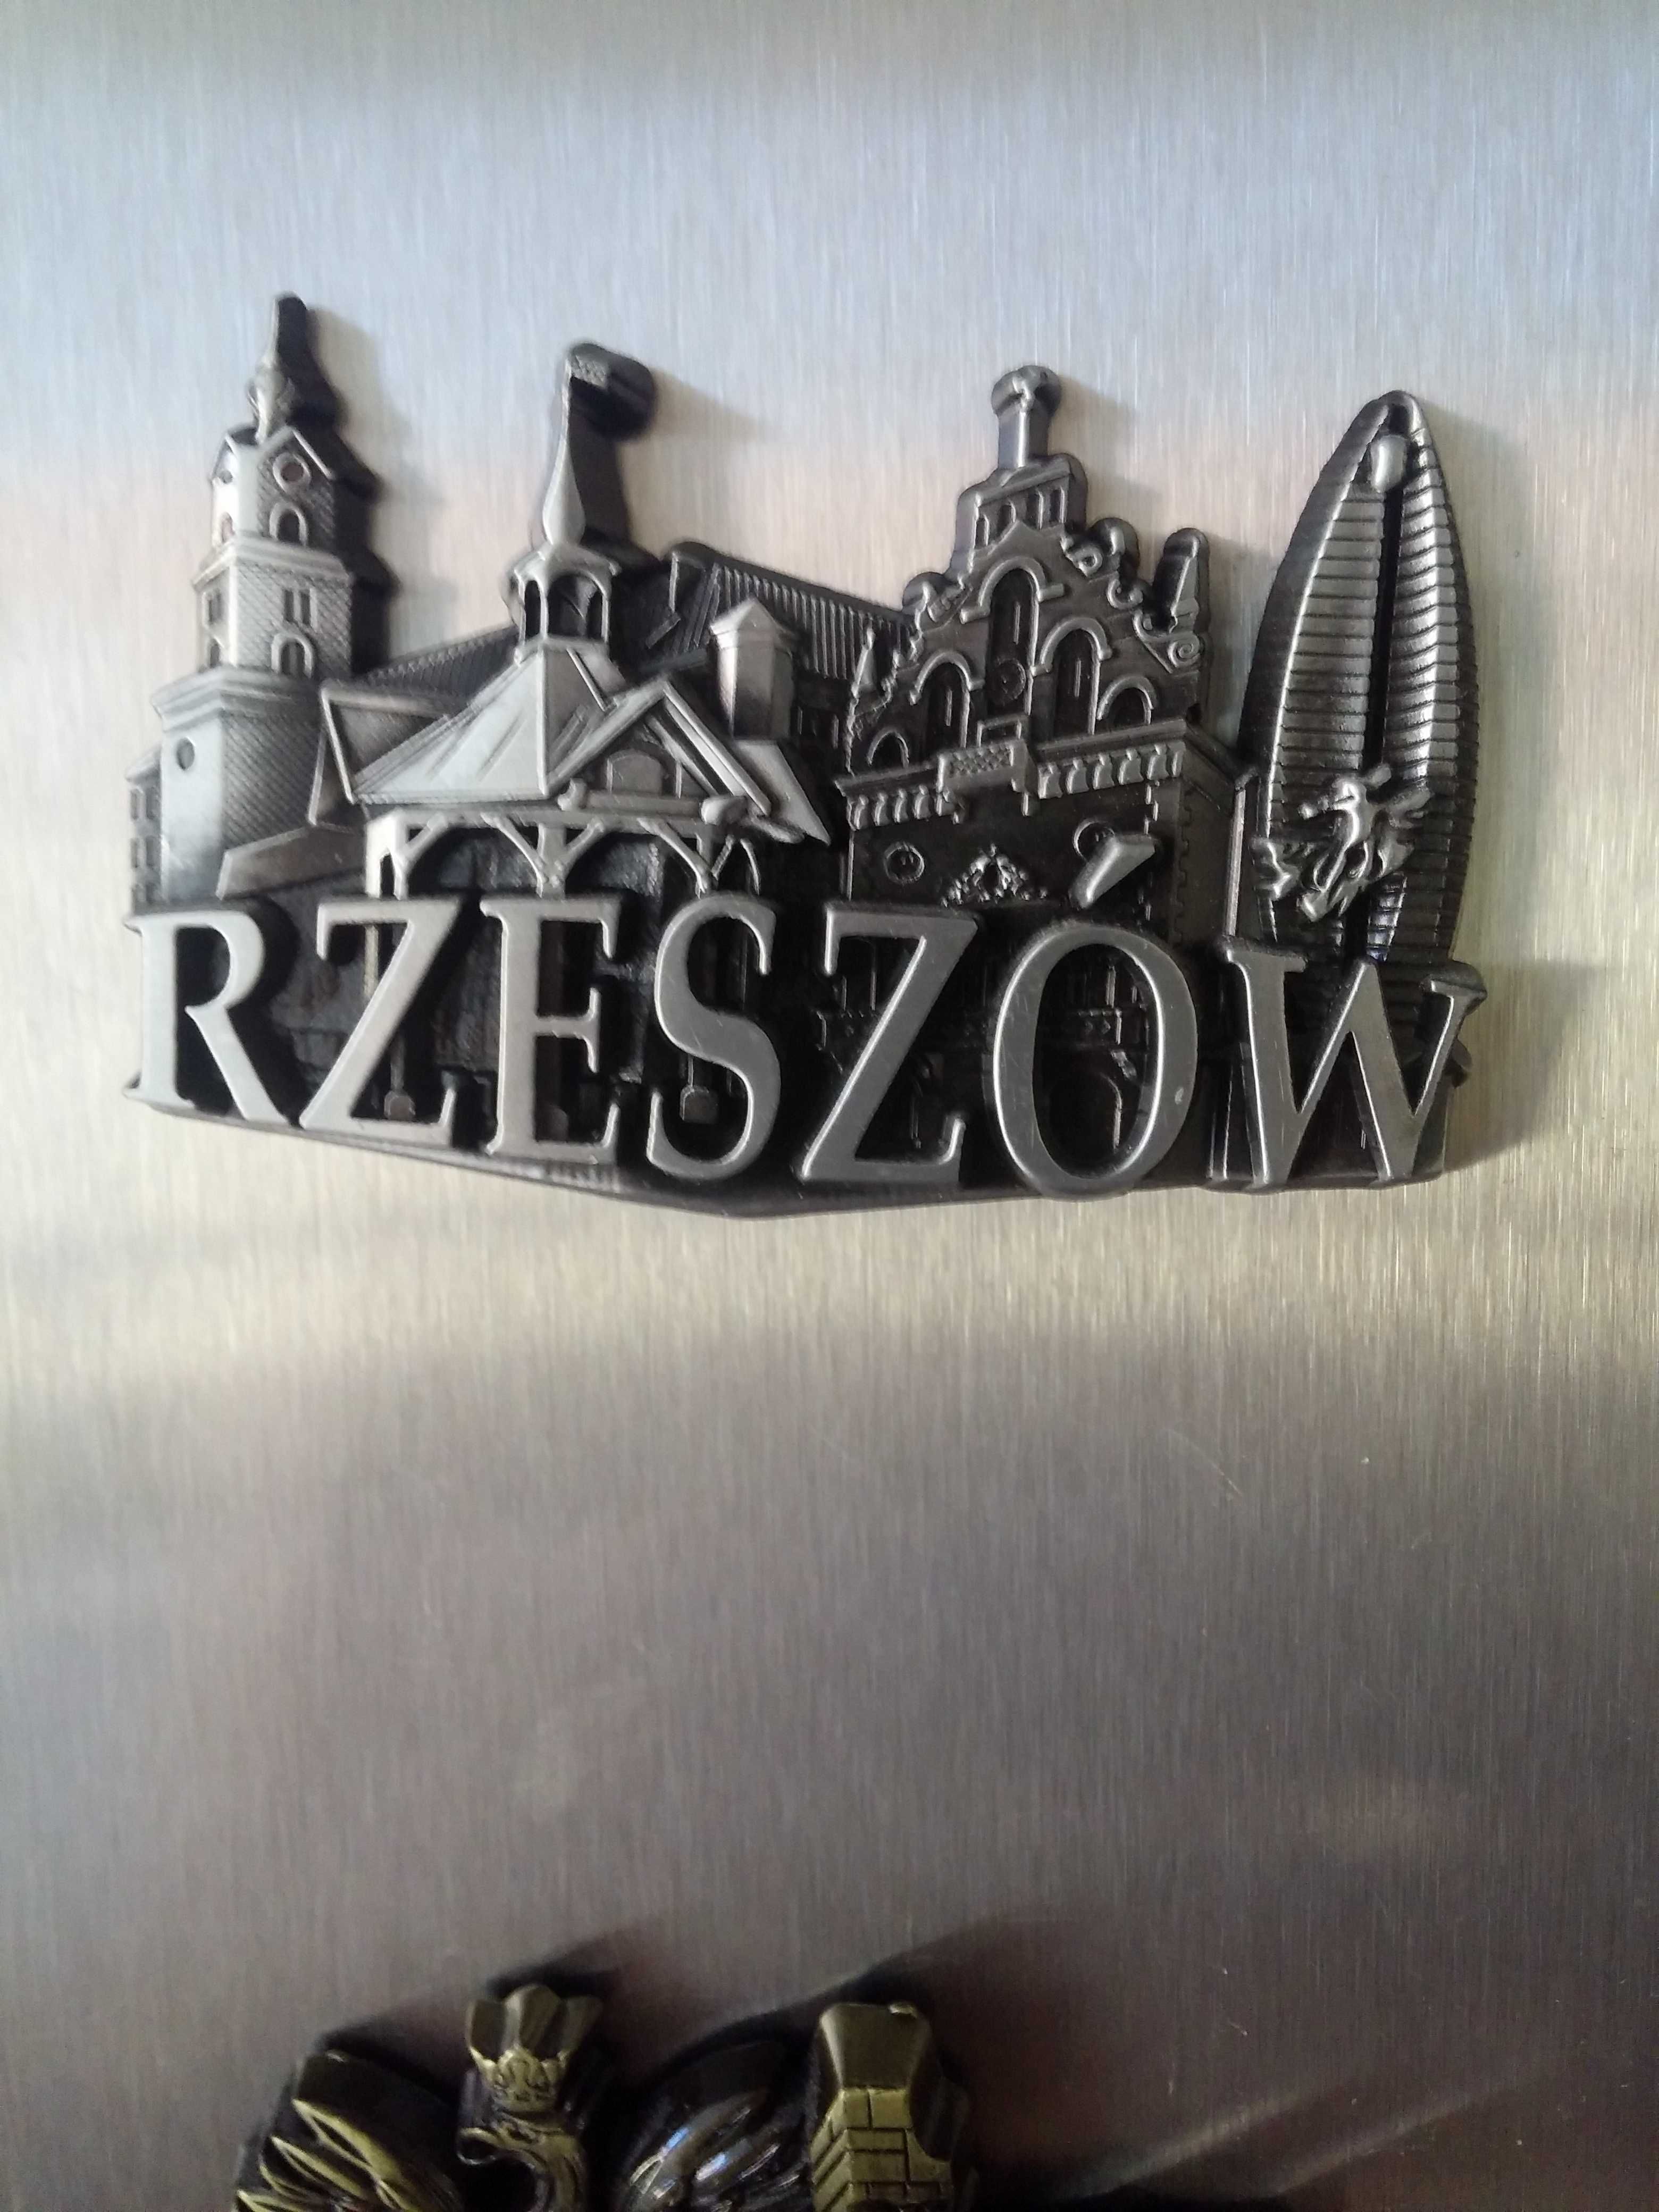 Zestaw 2 magnesów na lodówke : Rzeszów , Łańcut.